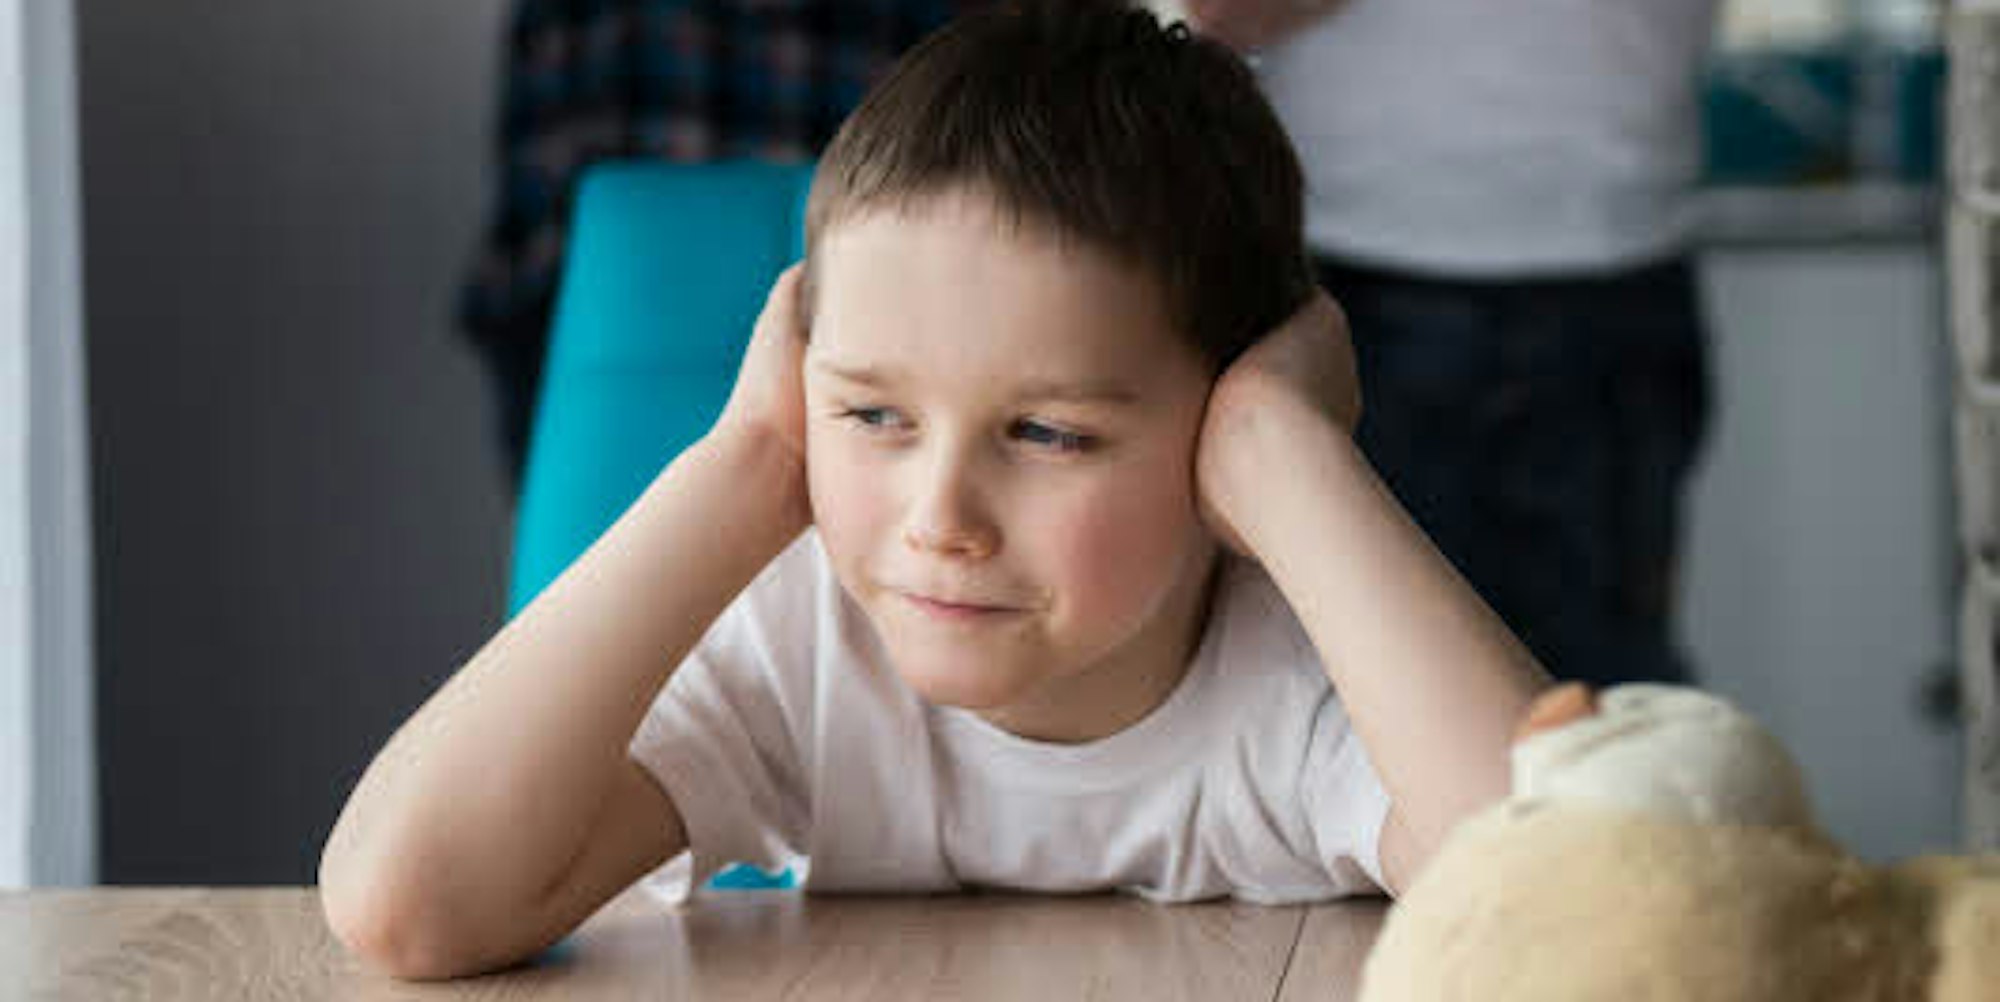 Wie Kinder leiden: Ein Junge hält sich die Ohren zu, während seine Eltern streiten